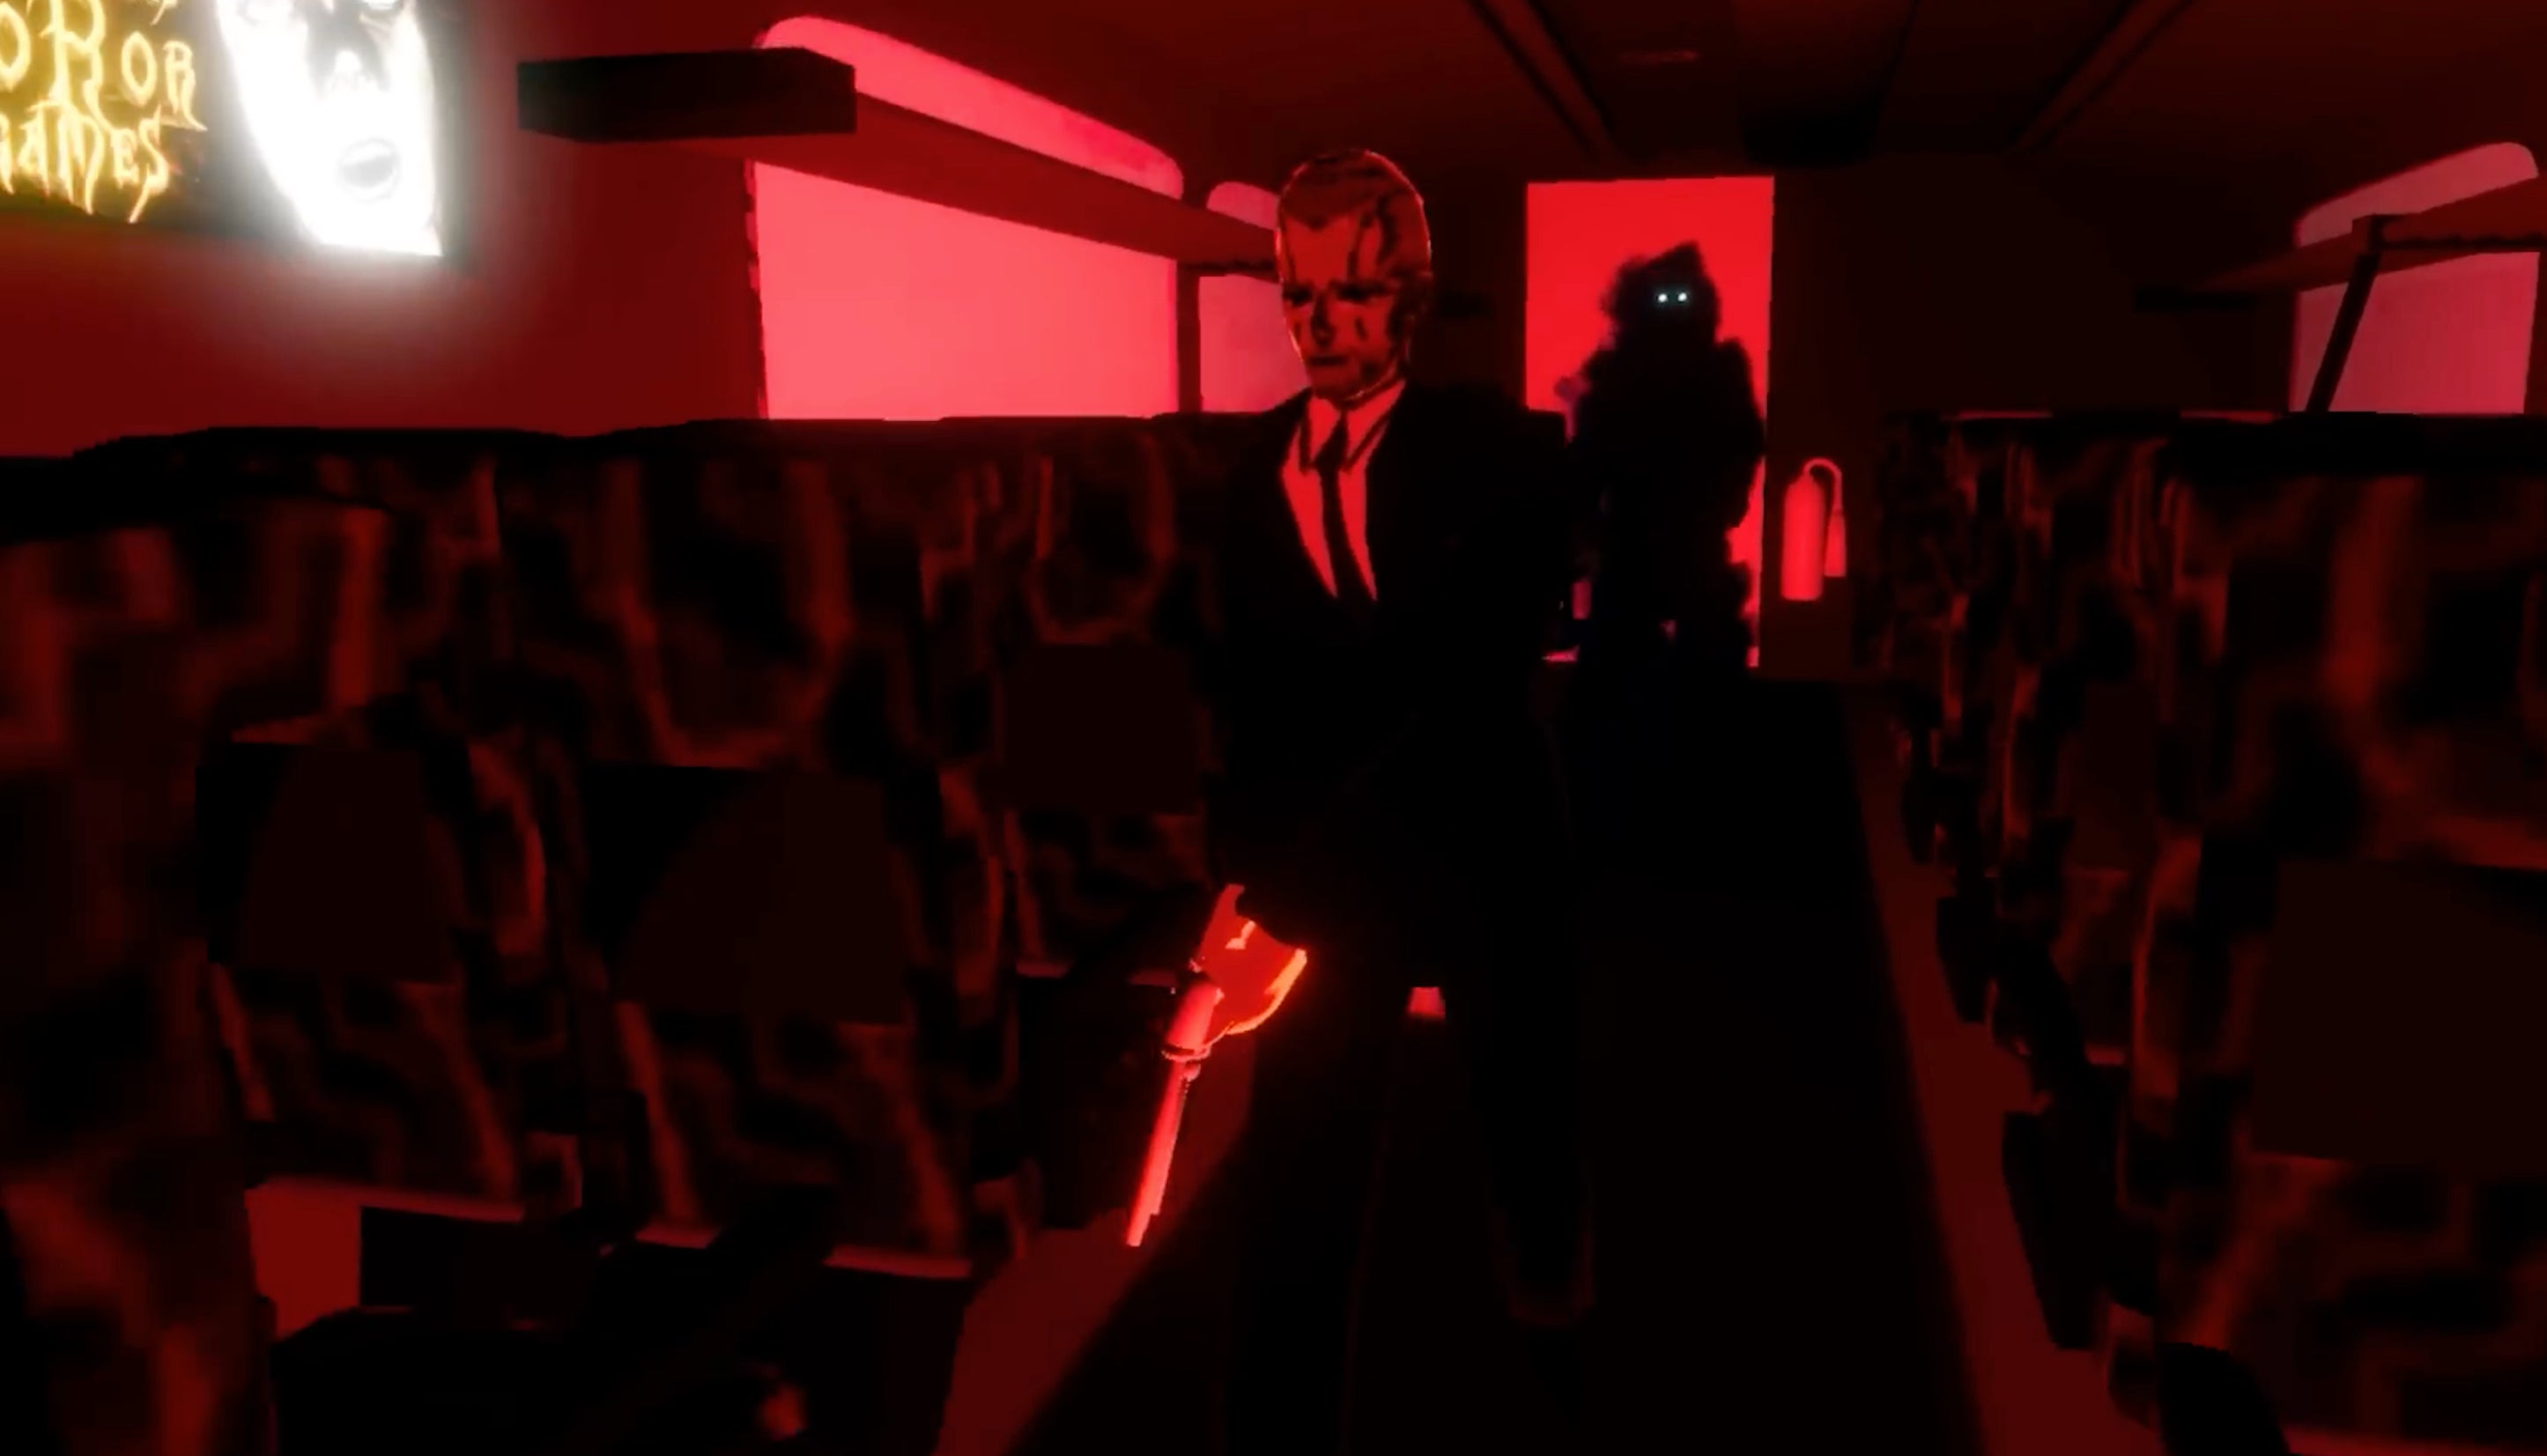 Desenvolvedor de Umurangi Generation provoca novo jogo de terror inspirado em Metal Gear e Silent Hill